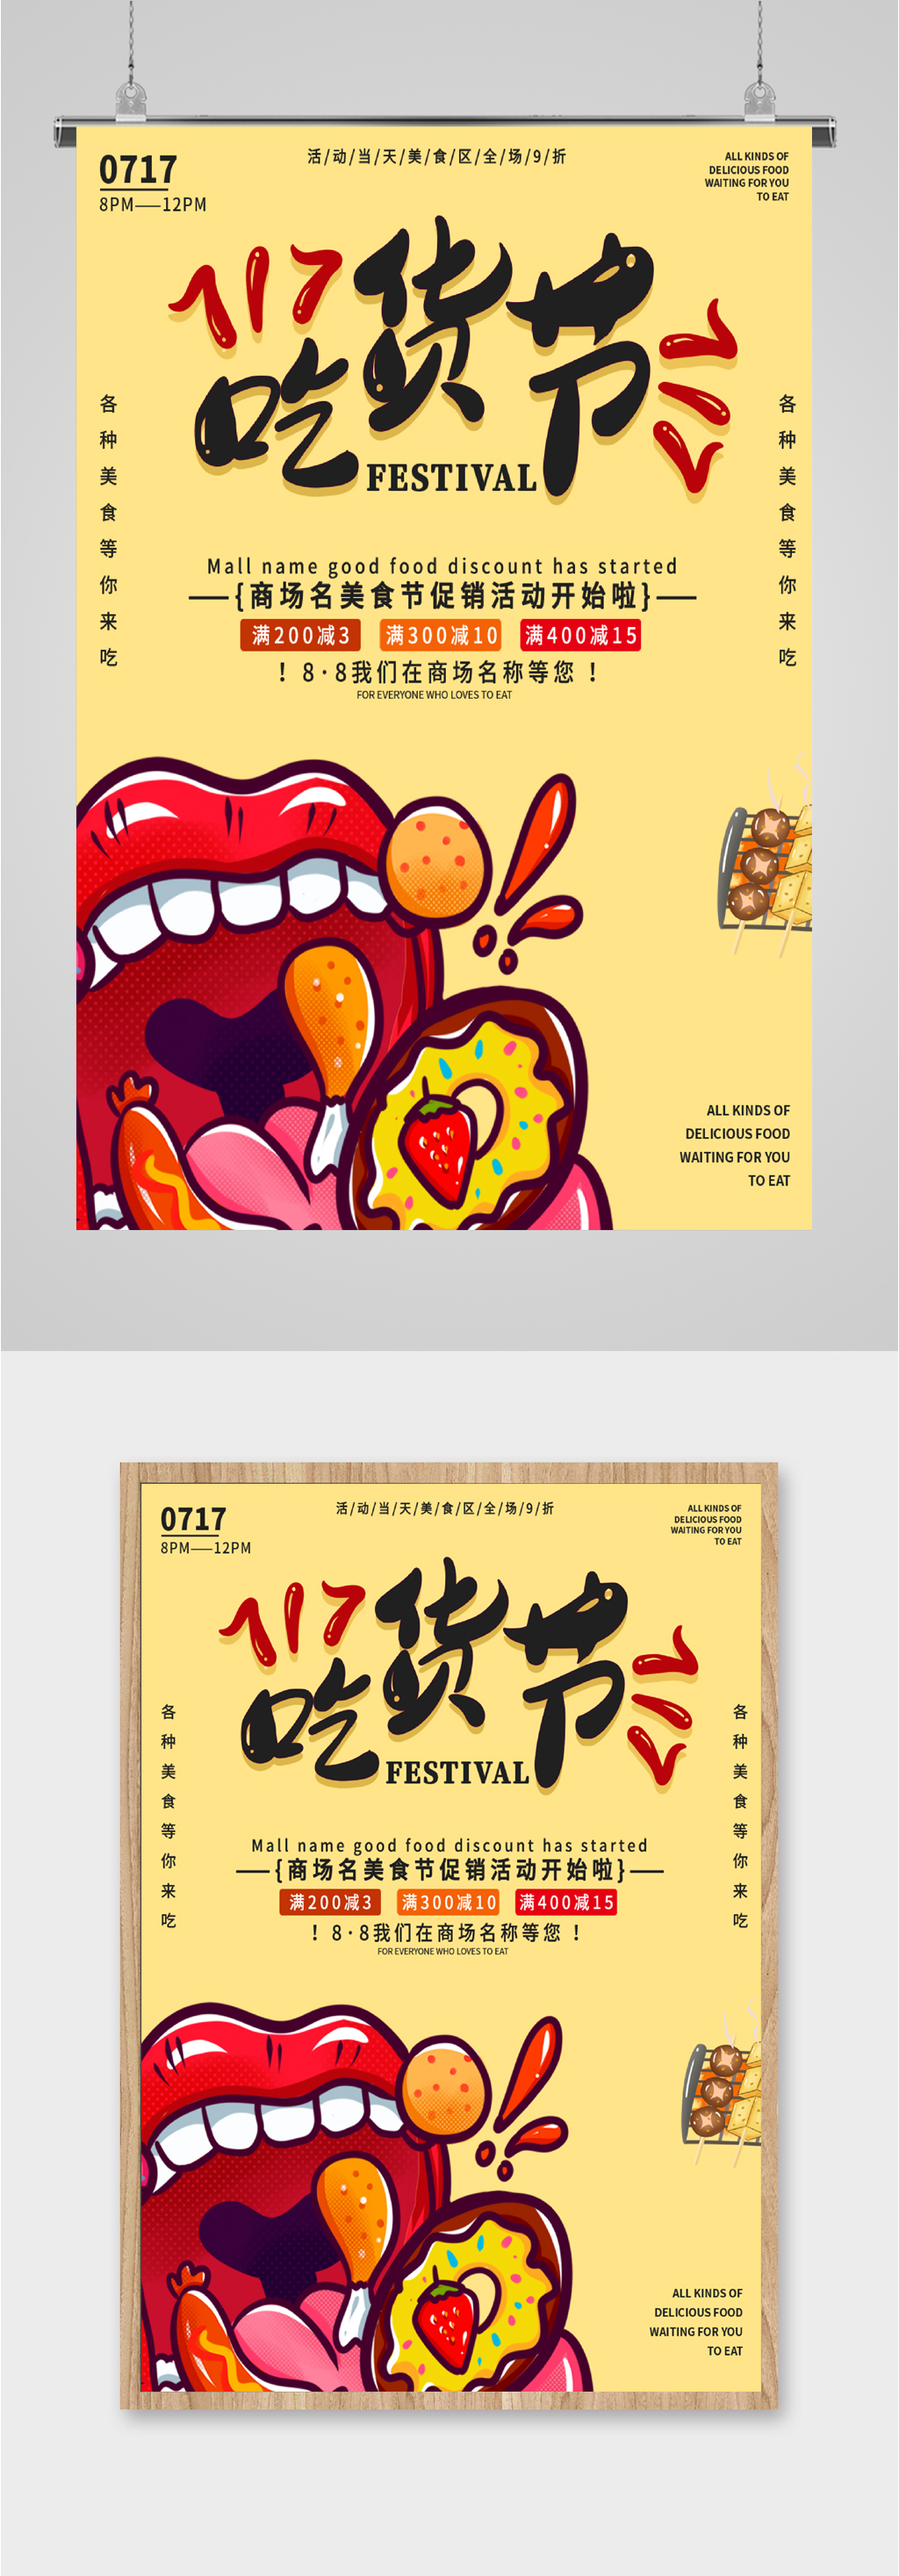 美食节宣传海报配文图片